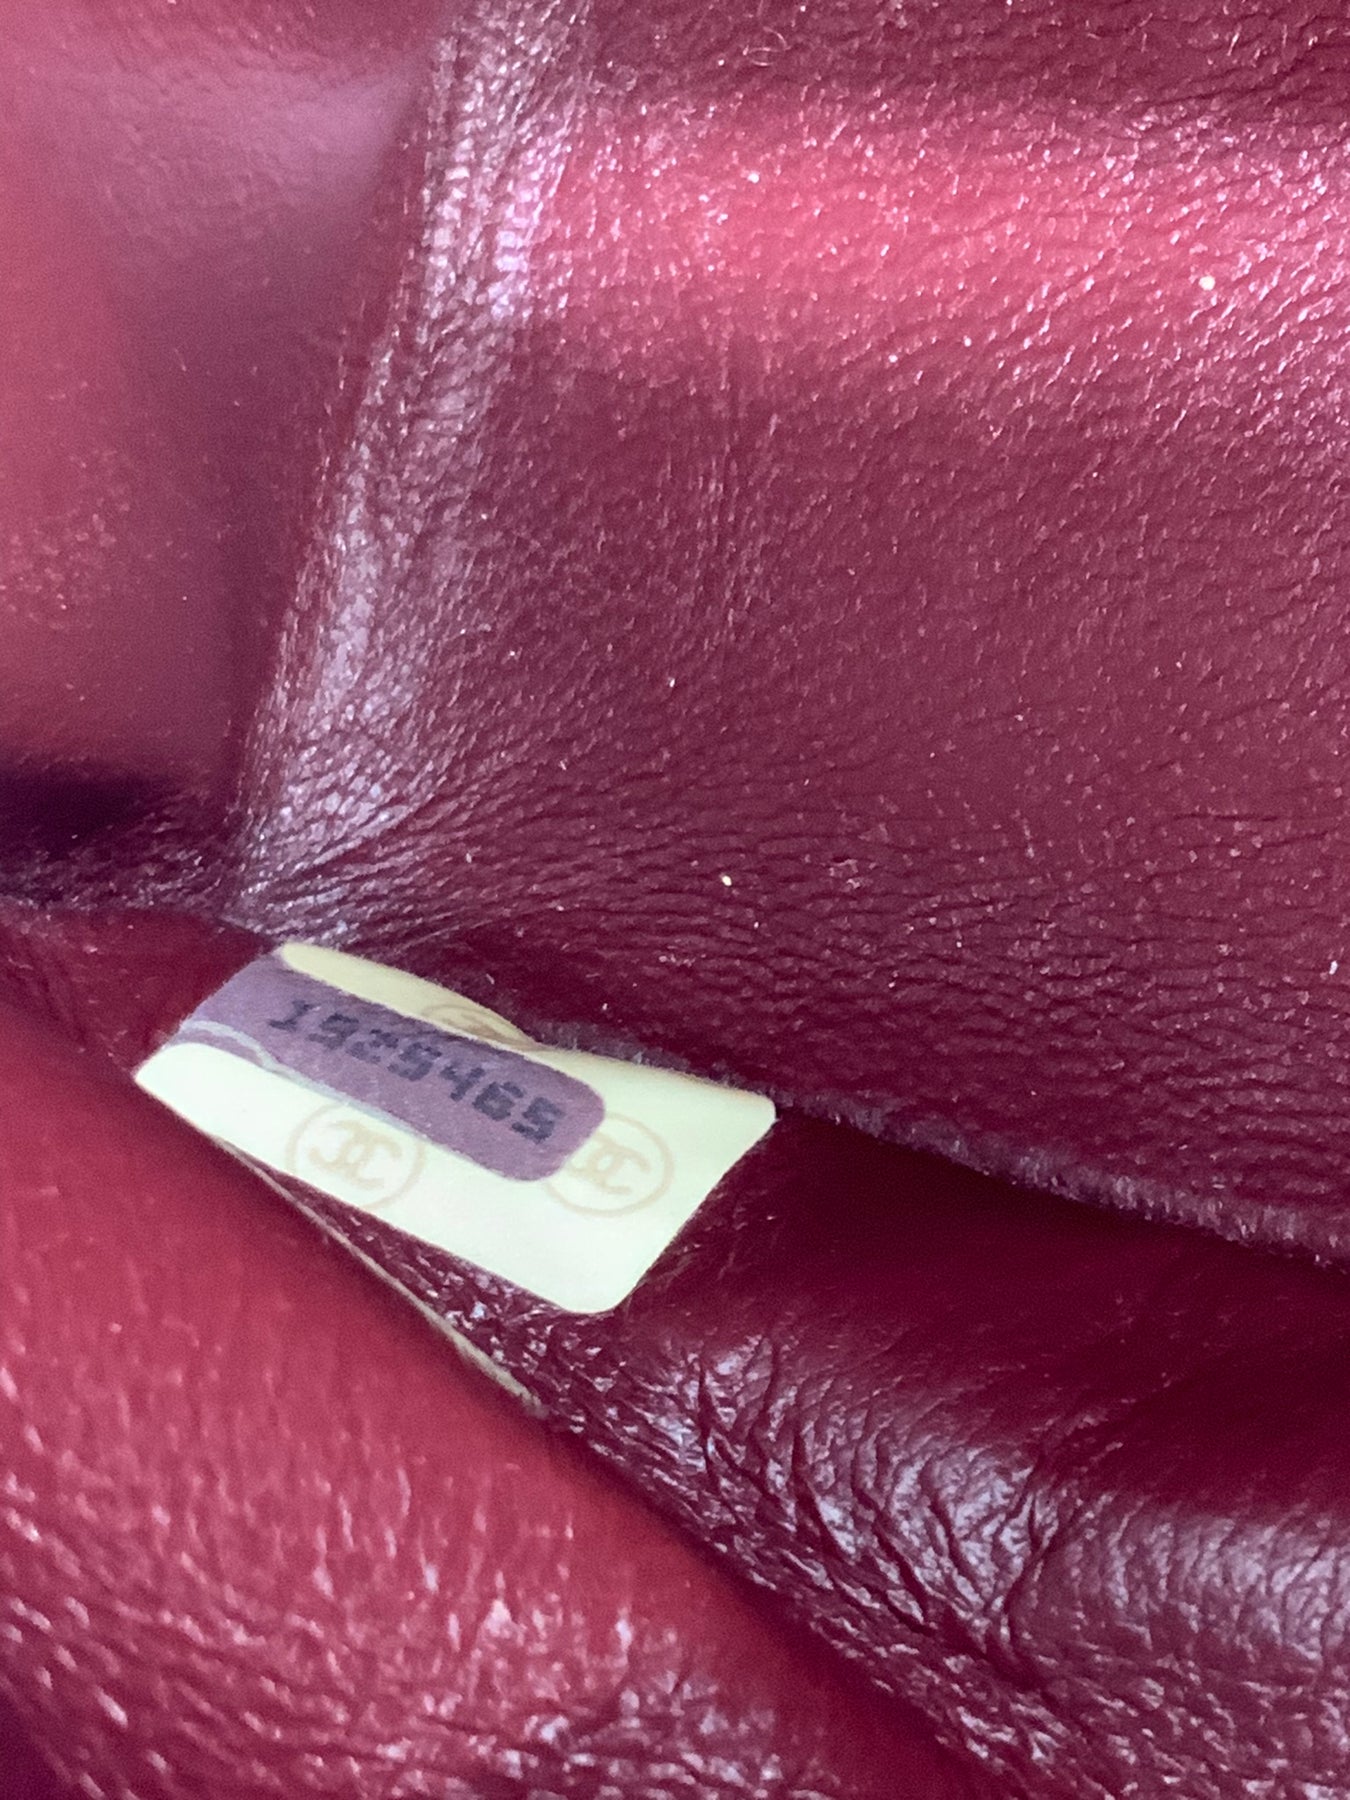 little red chanel bag vintage